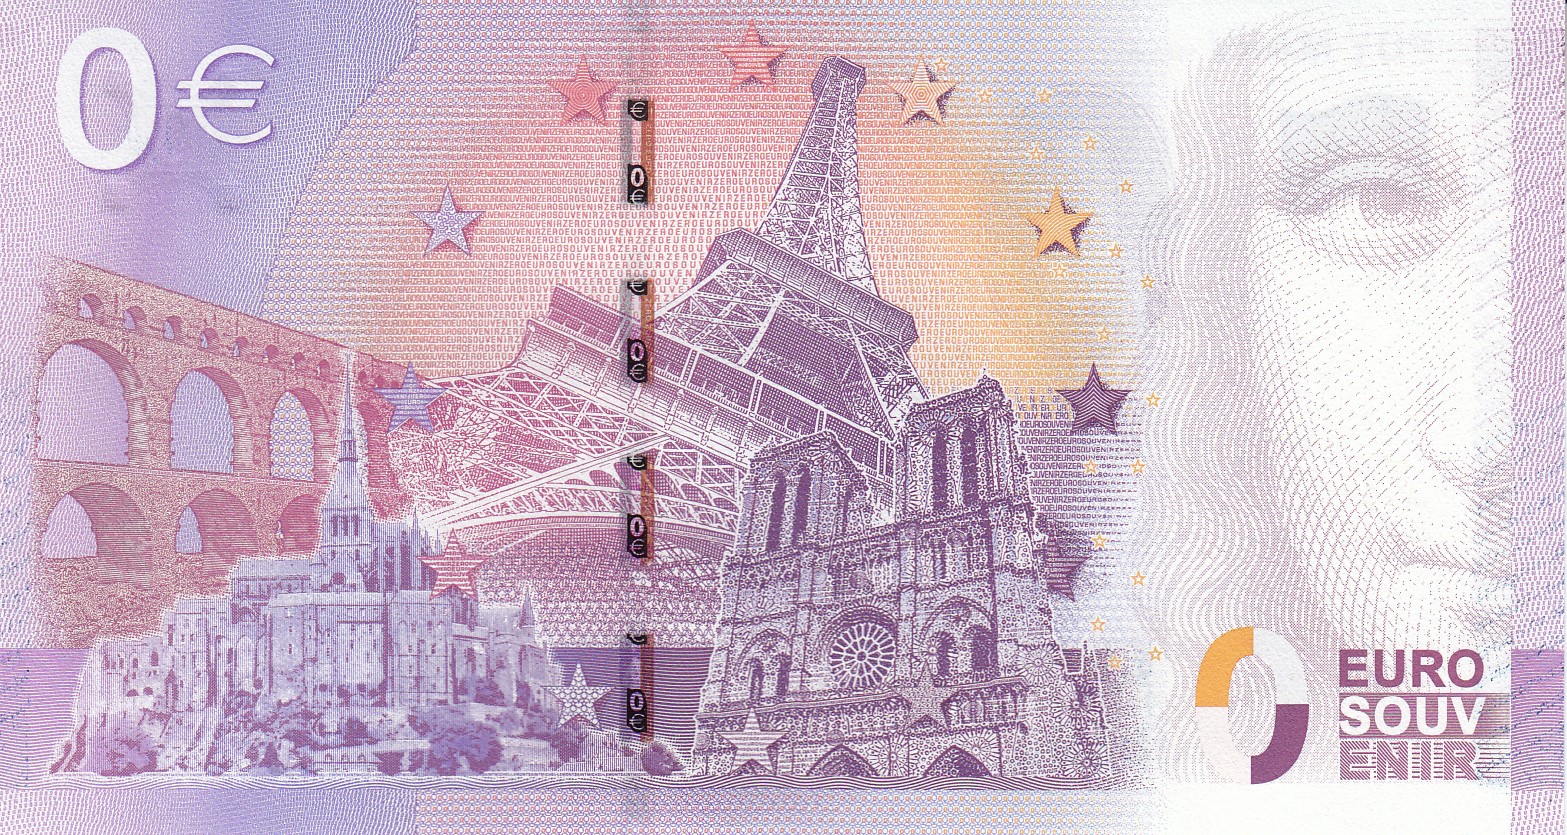 Шуточная сувенирная банкнота 0 евро с коллажем из самых известных реально существующих объектов Франции. Источник http://www.mcoin.ru/